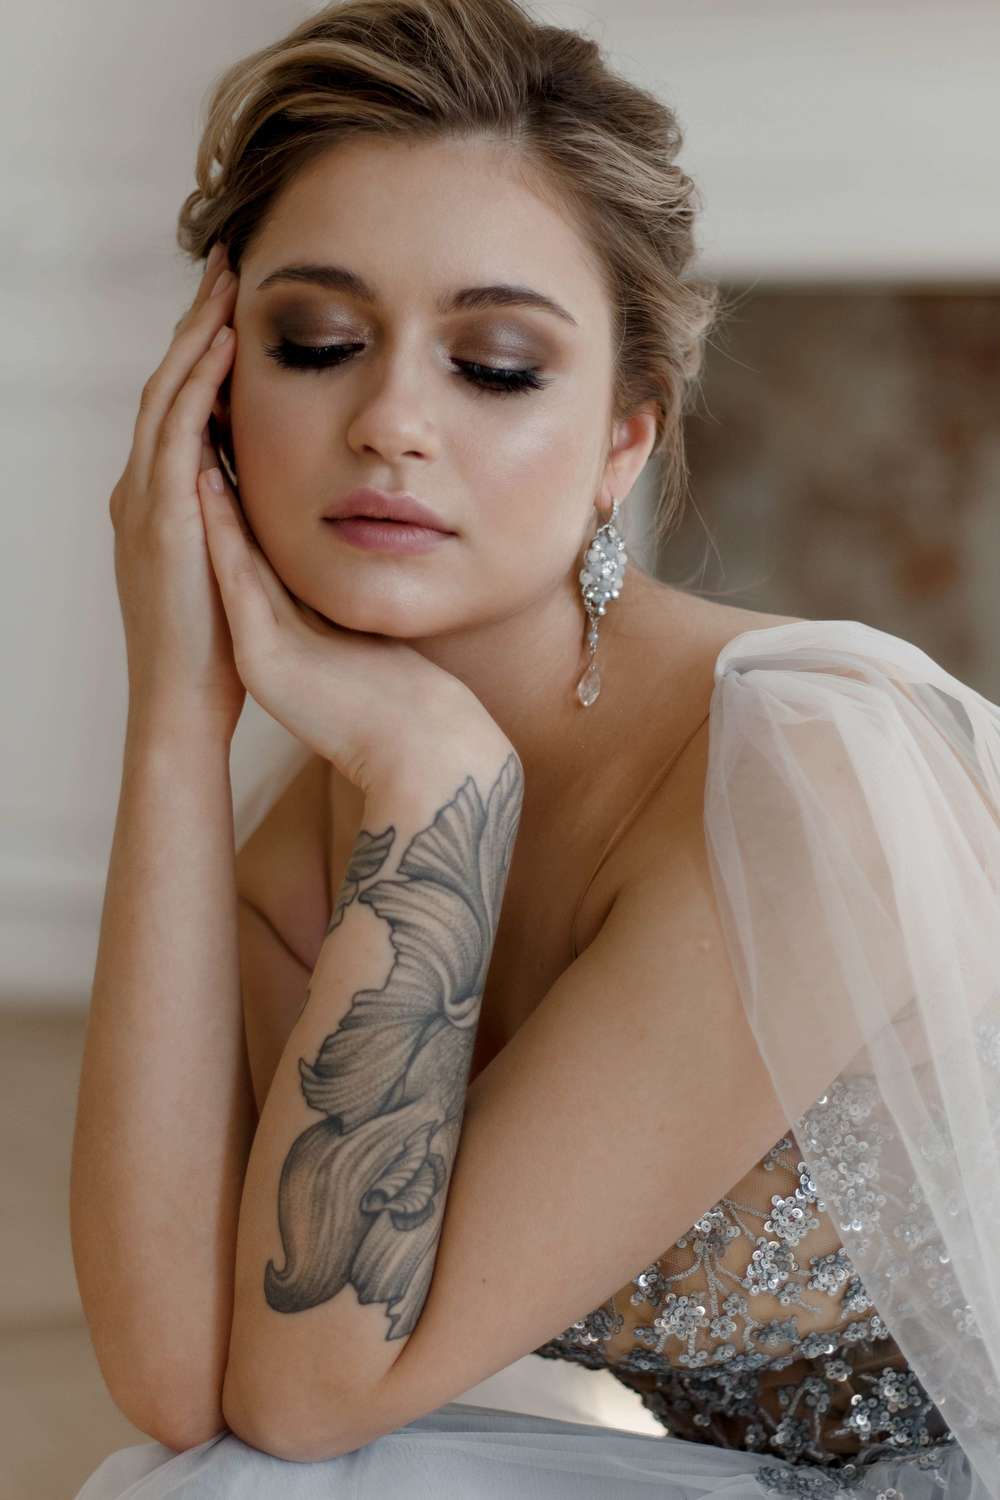 В Ташкенте сорвали свадьбу из-за татуировки на теле невесты